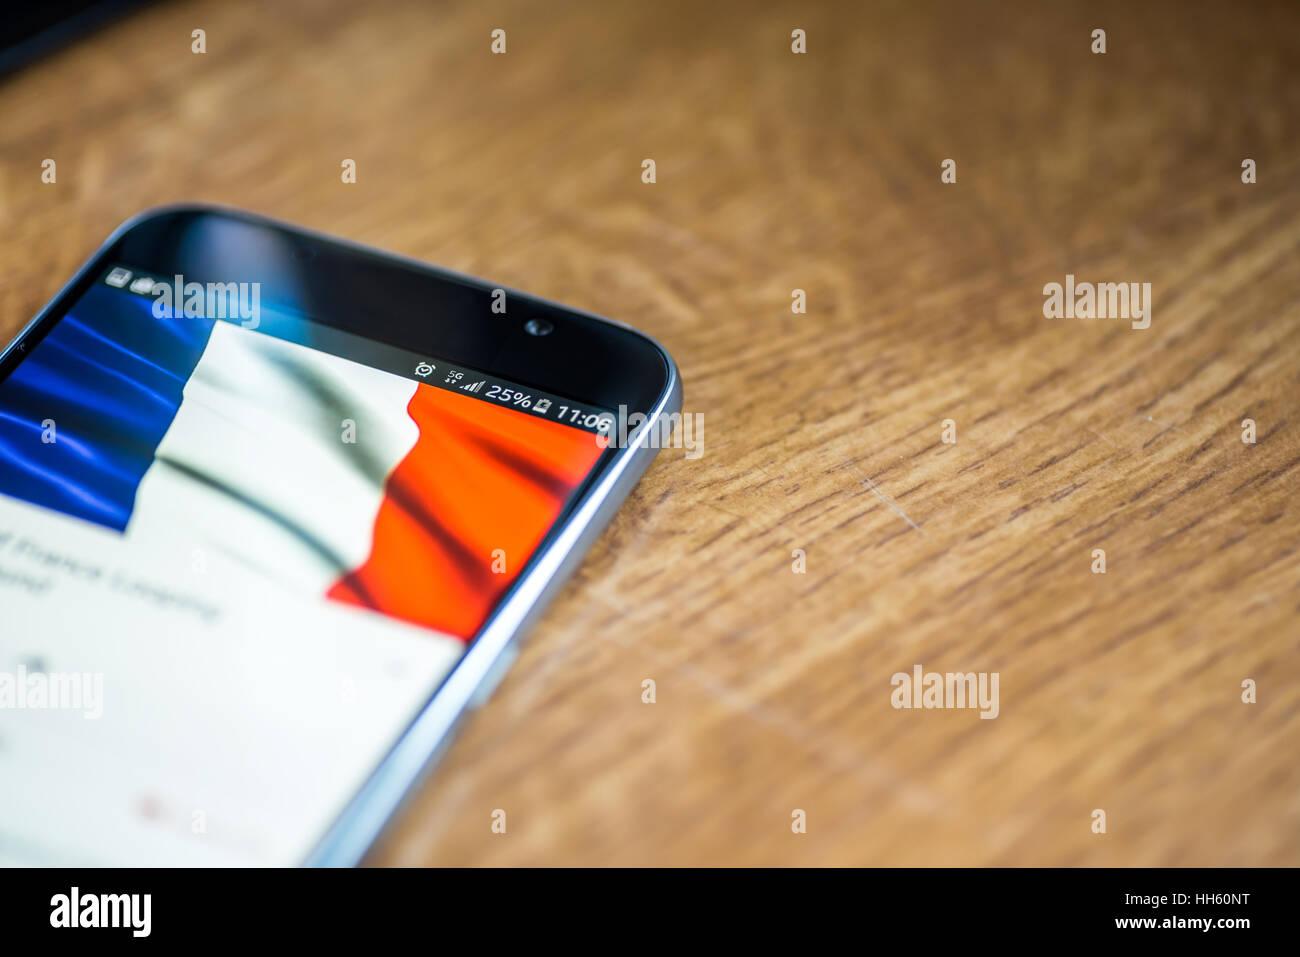 Sur fond de bois avec smartphone 5G Réseau inscription 25  % et la France drapeau sur l'écran. Banque D'Images